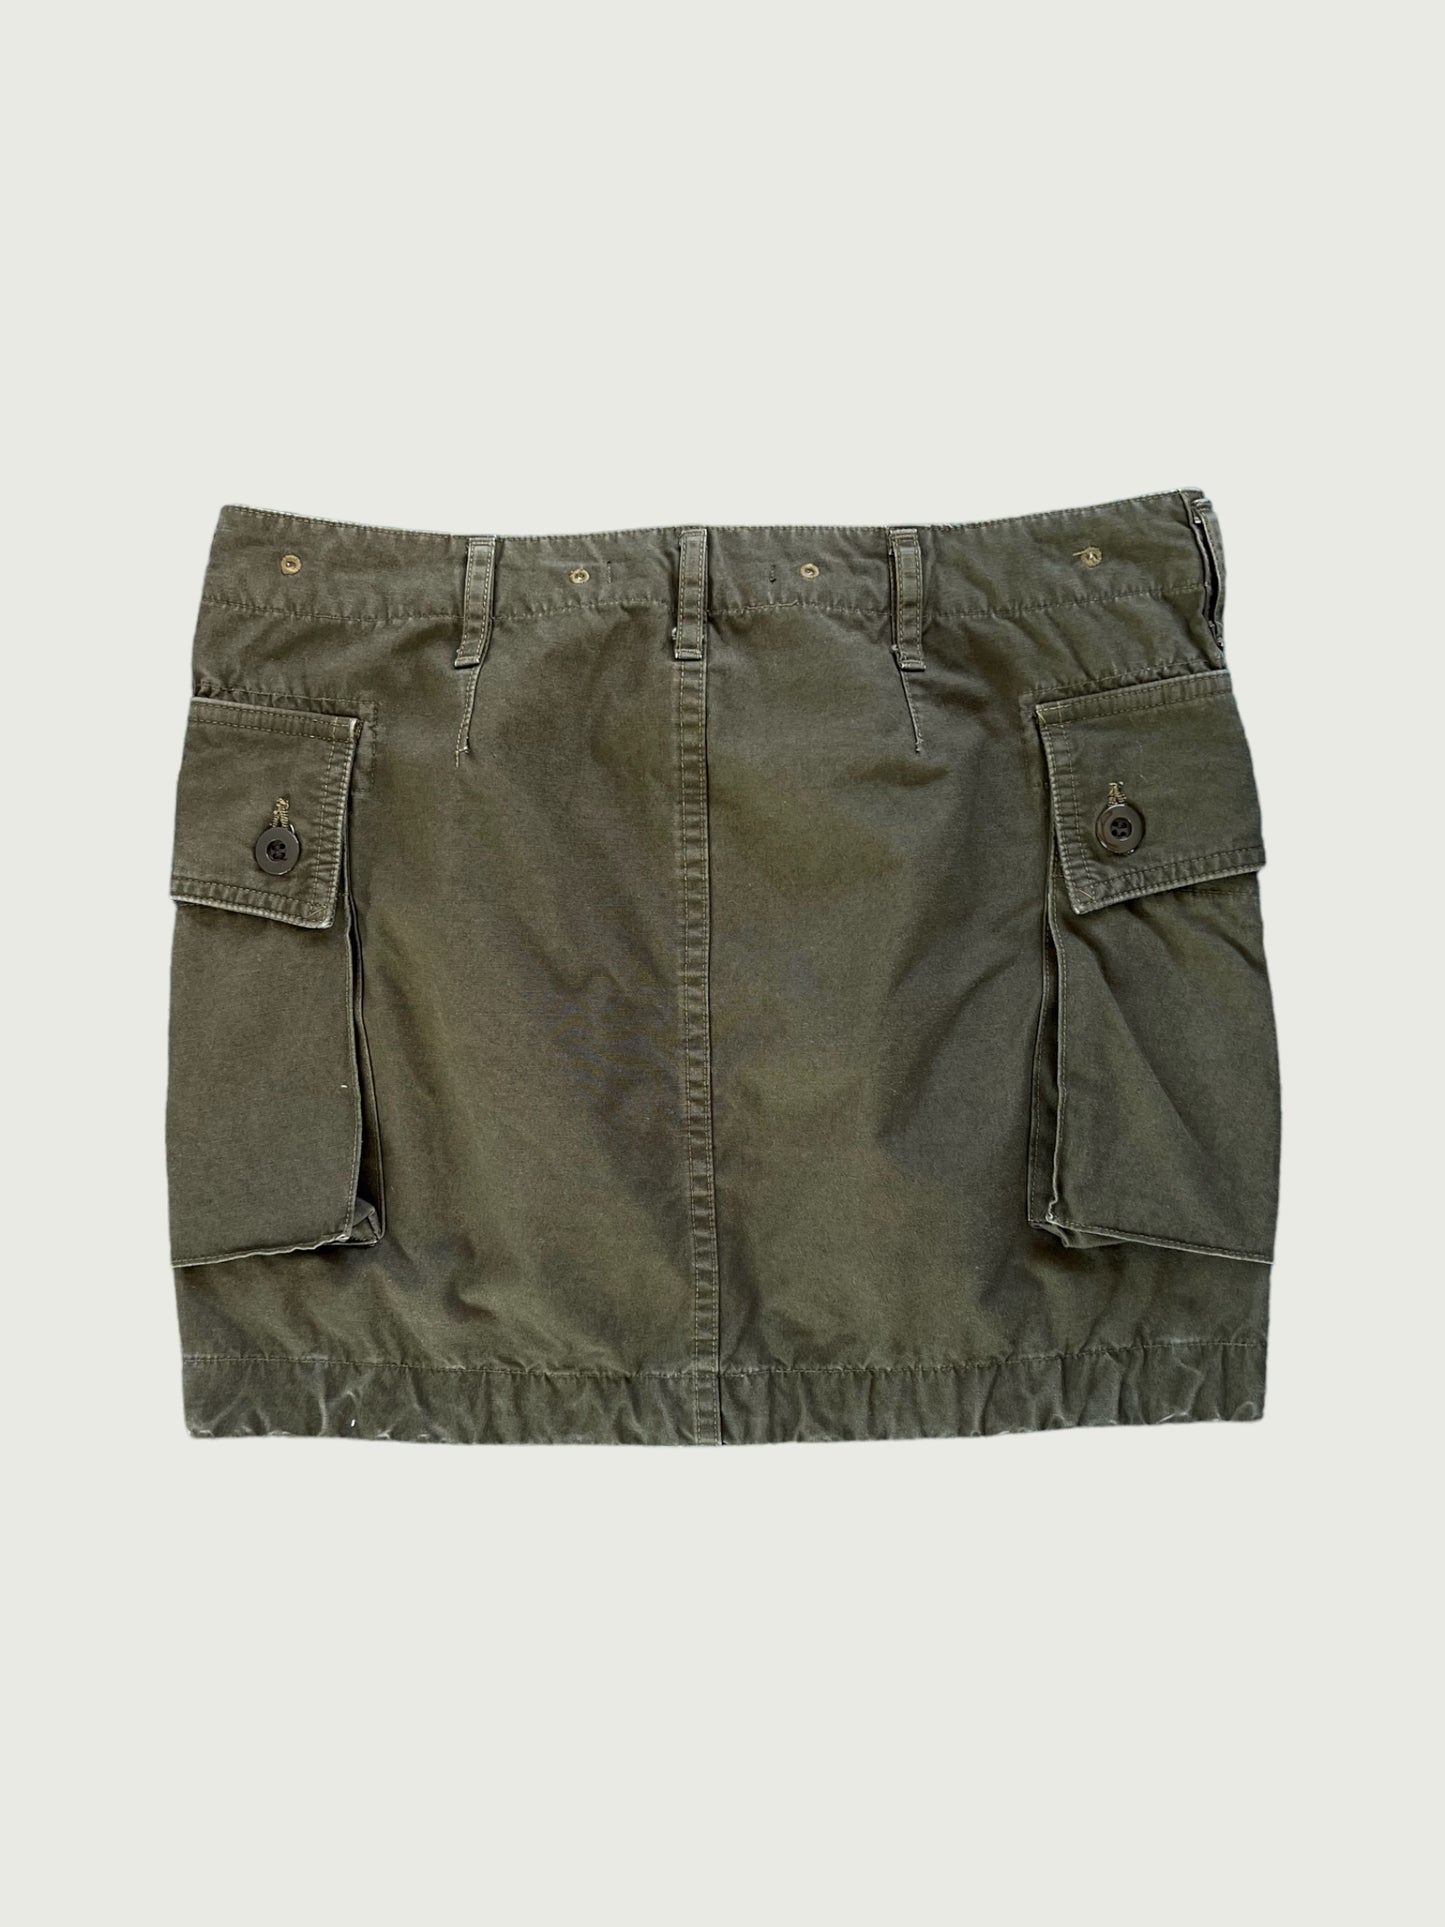 Vintage John Bull high pocket cargo mini skirt